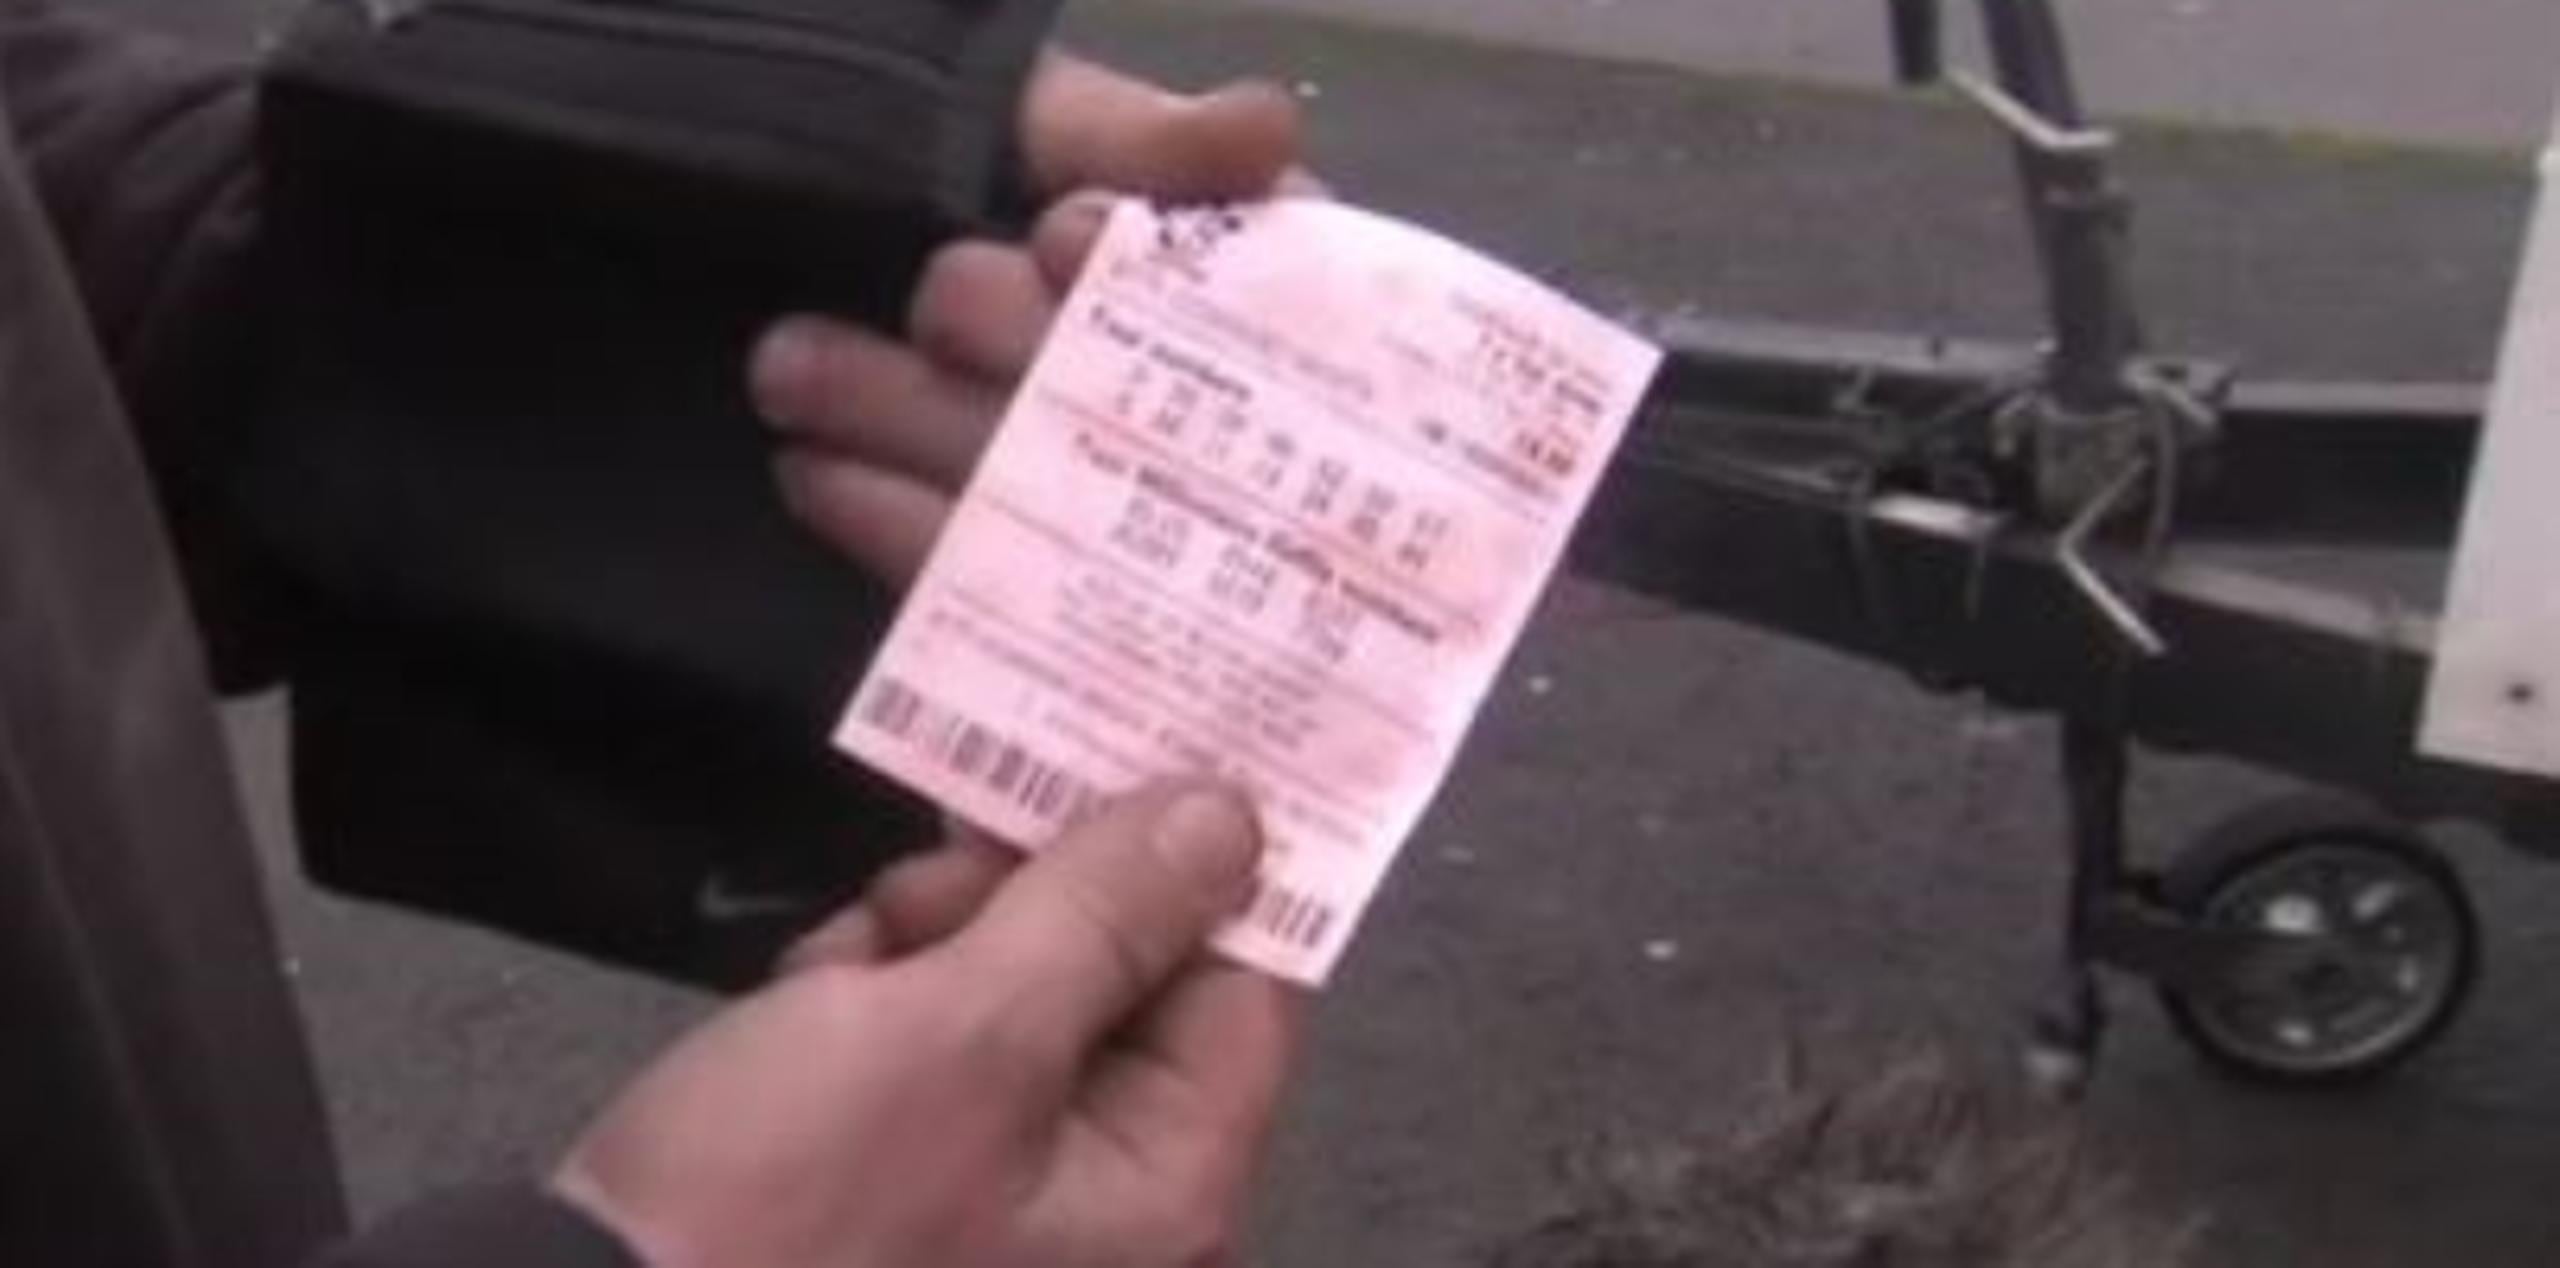 Tras el incidente la mujer se acercó a un punto de venta de la lotería donde le recomendaron hablar directamente con las autoridades oficiales. (Captura de vídeo)